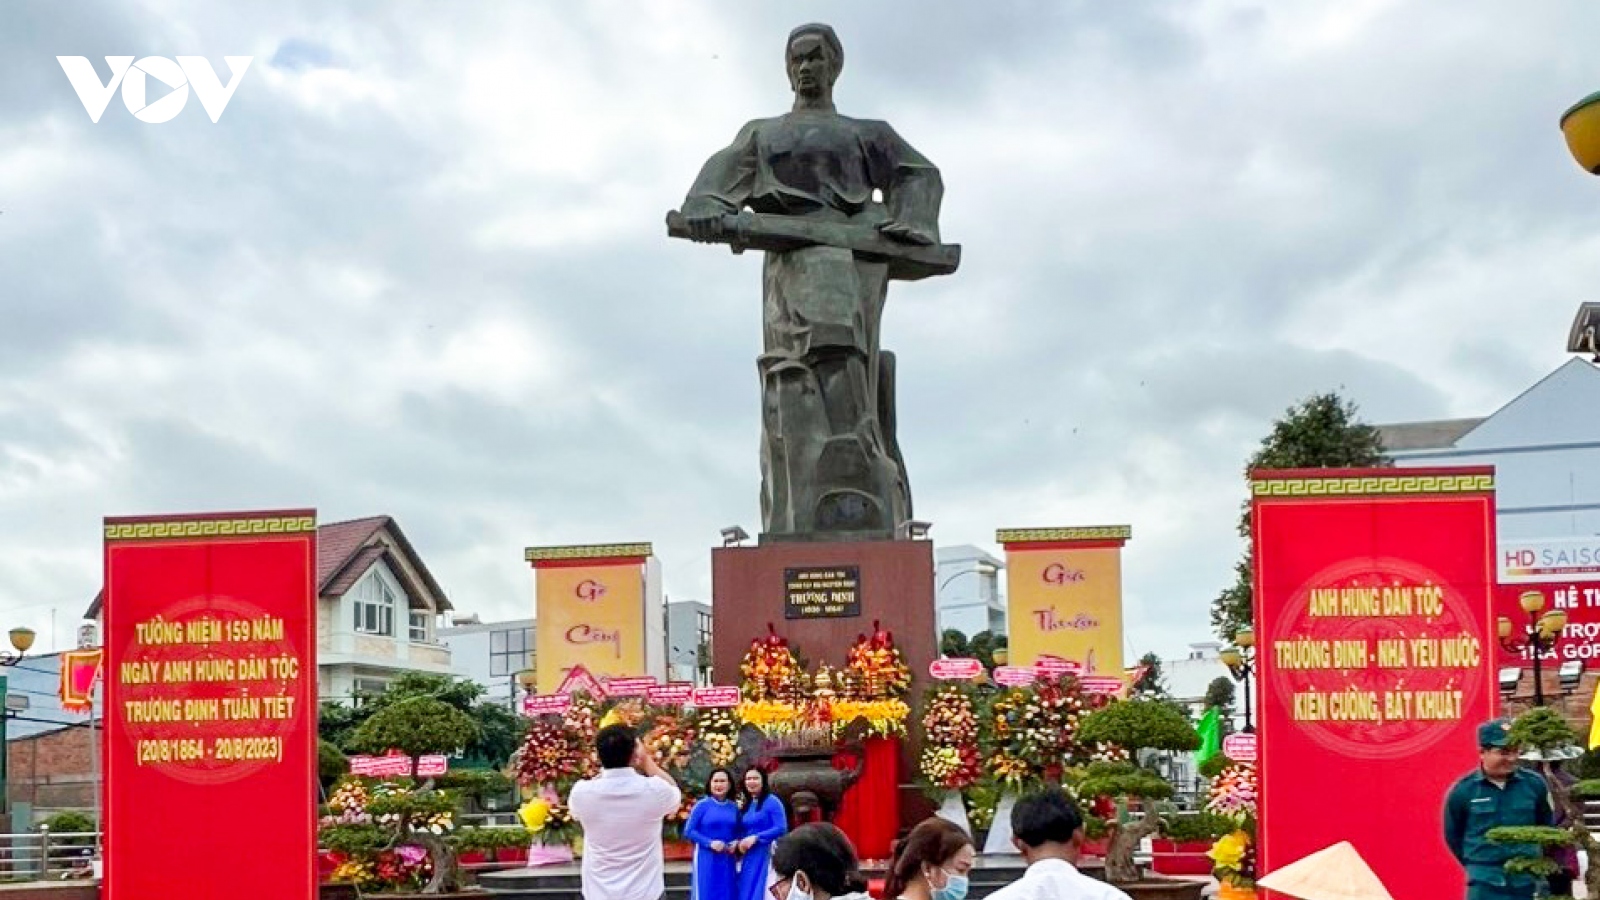 Trang trọng tổ chức kỉ niệm 159 năm Ngày Anh hùng dân tộc Trương Định tuẫn tiết